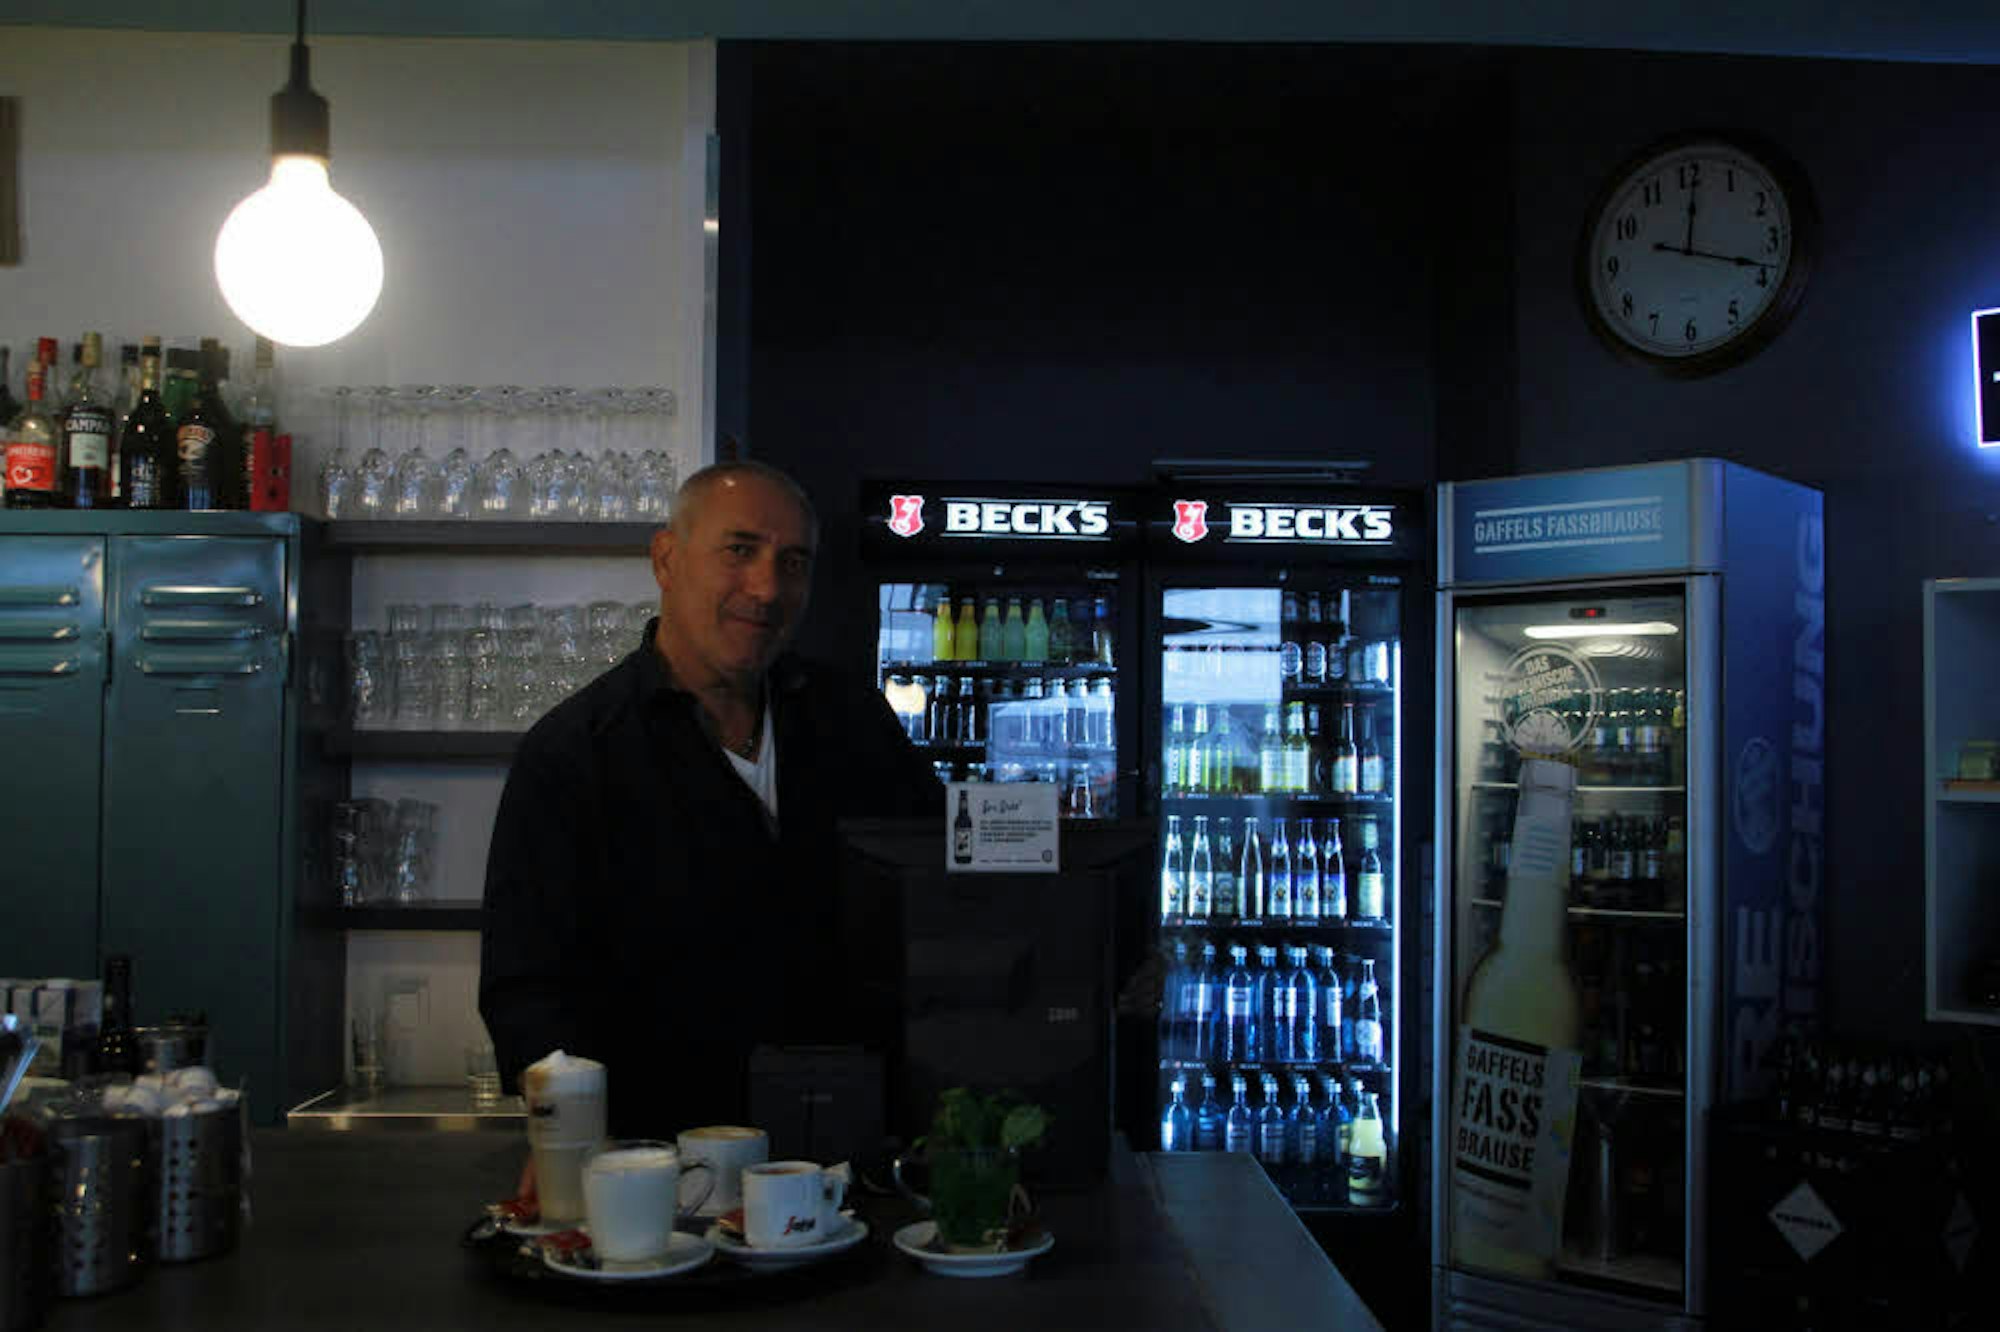 Jannis Konstantinidis – Kaffee in verschiedenen Variationen gehört natürlich zum Angebot in seinem Café Ecco.